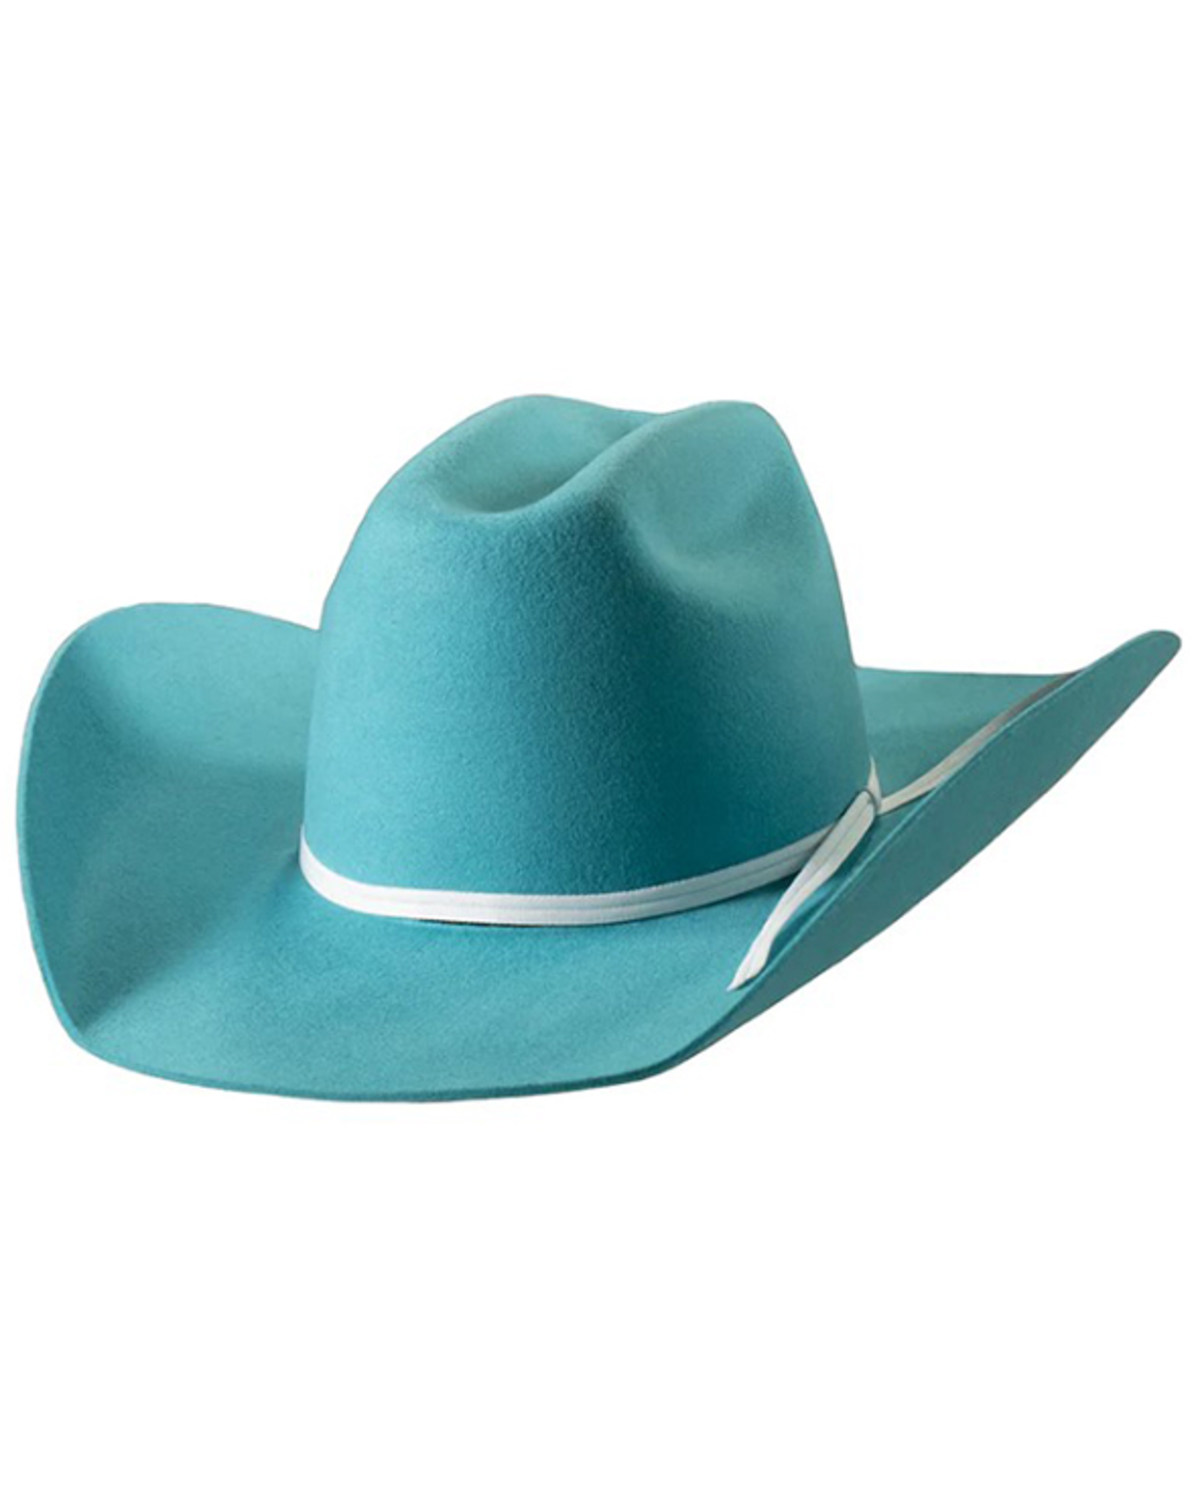 M & F Western Girls' Felt Cowboy Hat